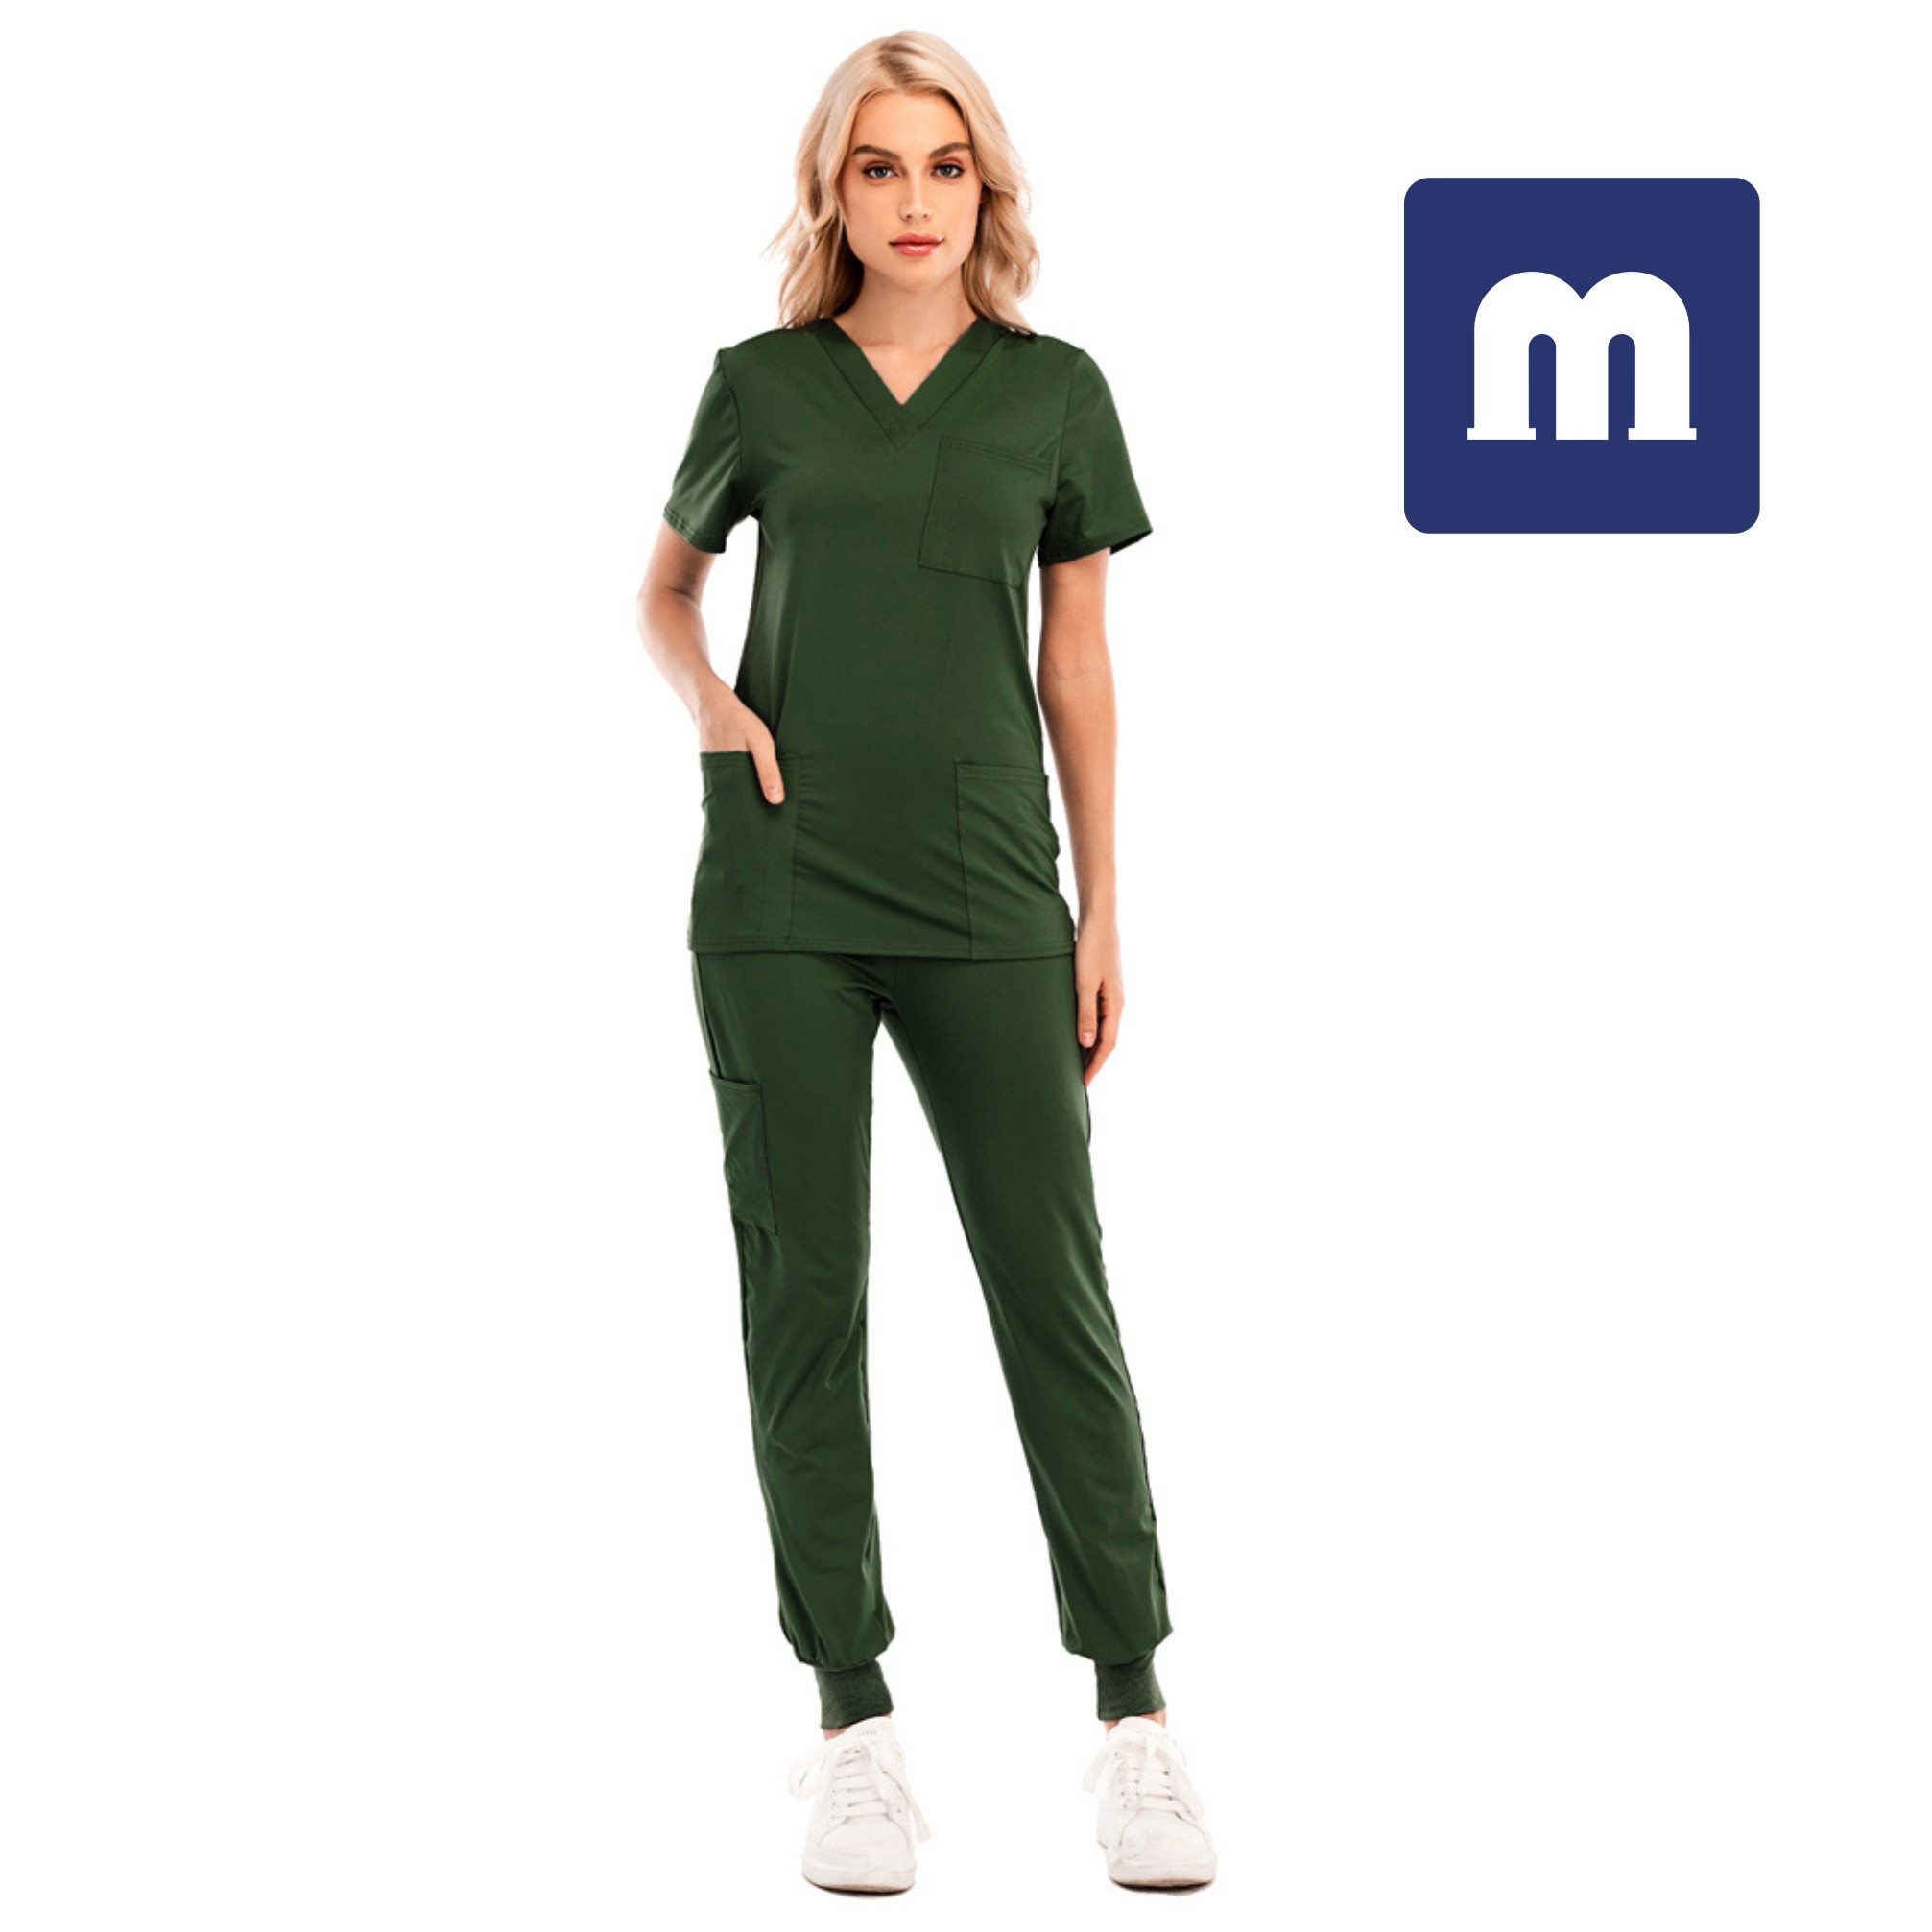 

Medigo-034 Women's Two Piece Pants Solid Color Spa Threaded Clinic Work Suits Tops+pants Unisex Scrubs Pet Nursing hospital Uniform Suit, Purple